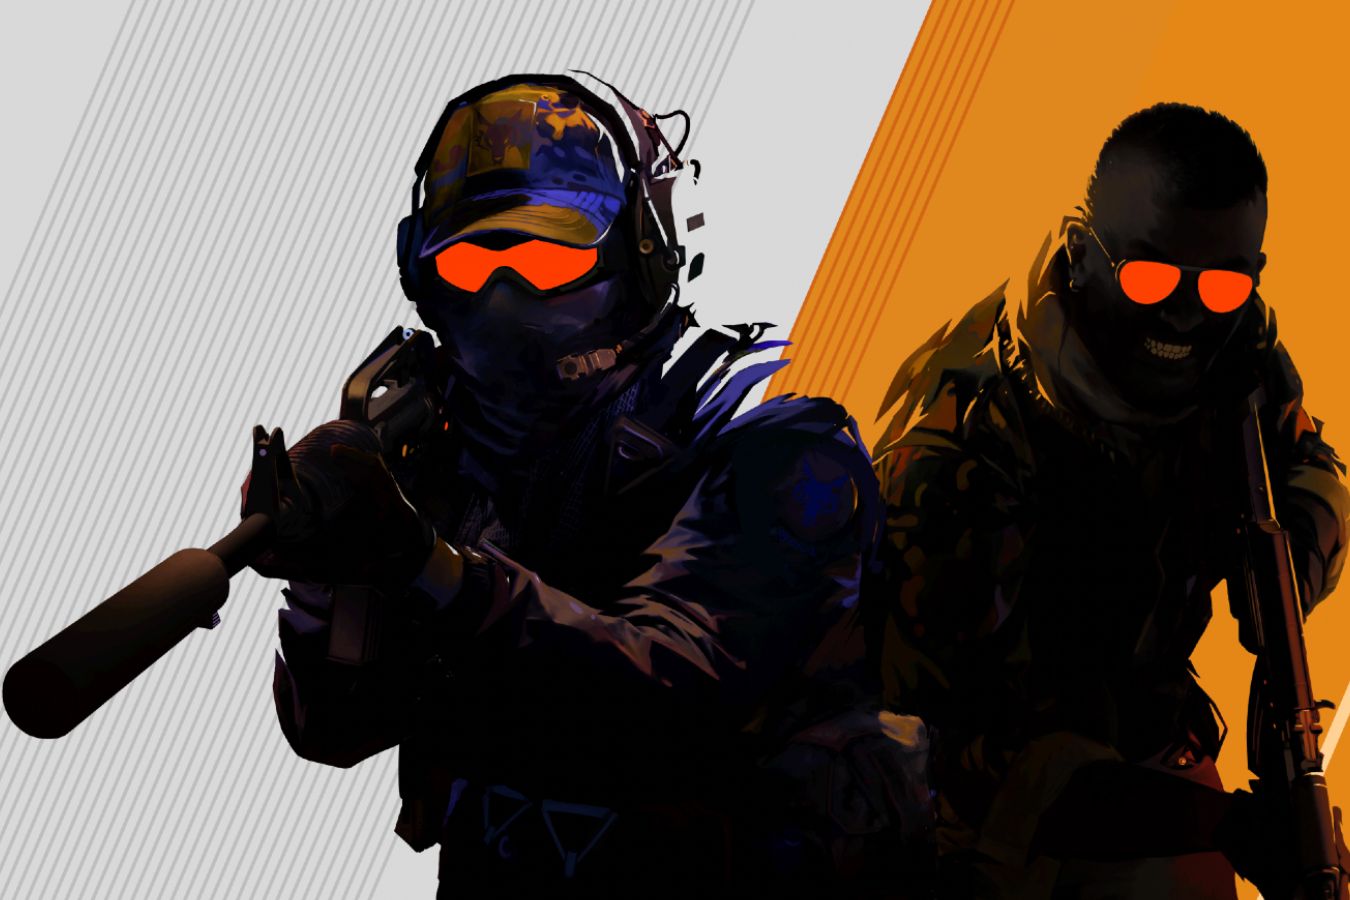 Анонс Counter-Strike 2: все детали, скачать, новости, видео, Source 2,  «Контра 2», новая CSGO, КСГО2 - Чемпионат